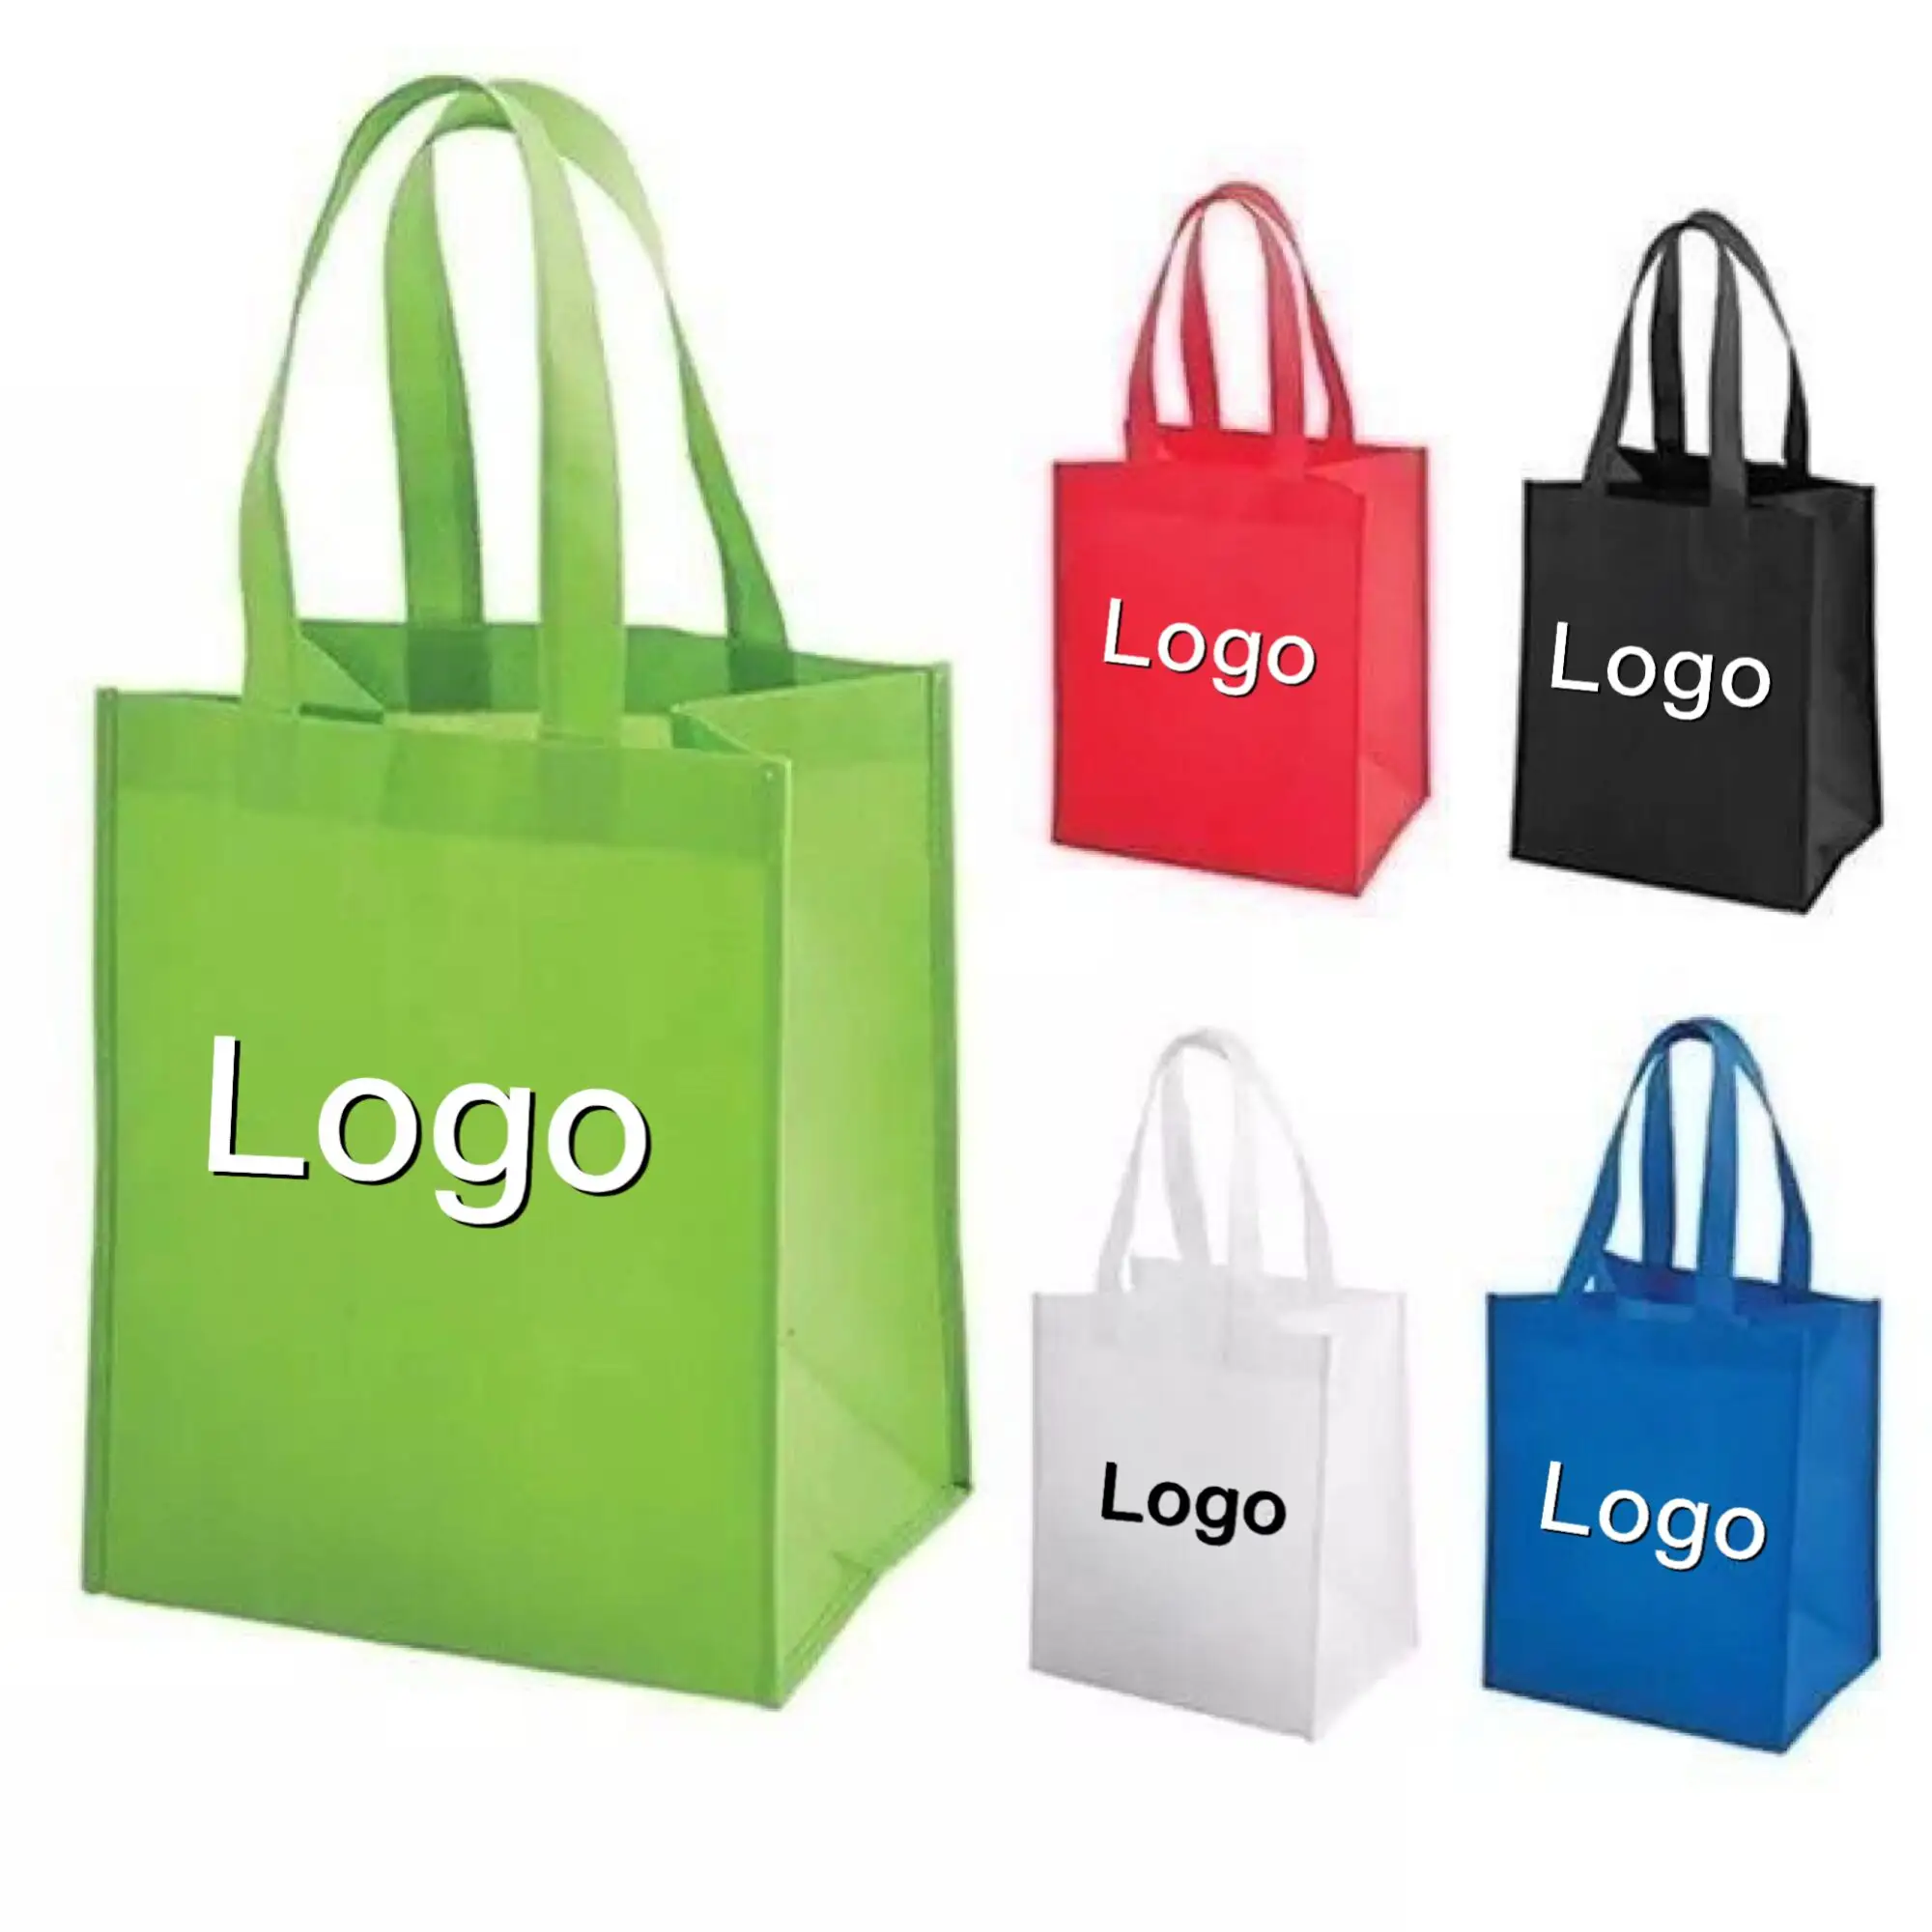 Özel taşıma katlanır kullanımlık bakkal alışveriş tote pp nonwoven olmayan dokuma logoları ile % alışveriş çantası yeniden olmayan dokuma çanta